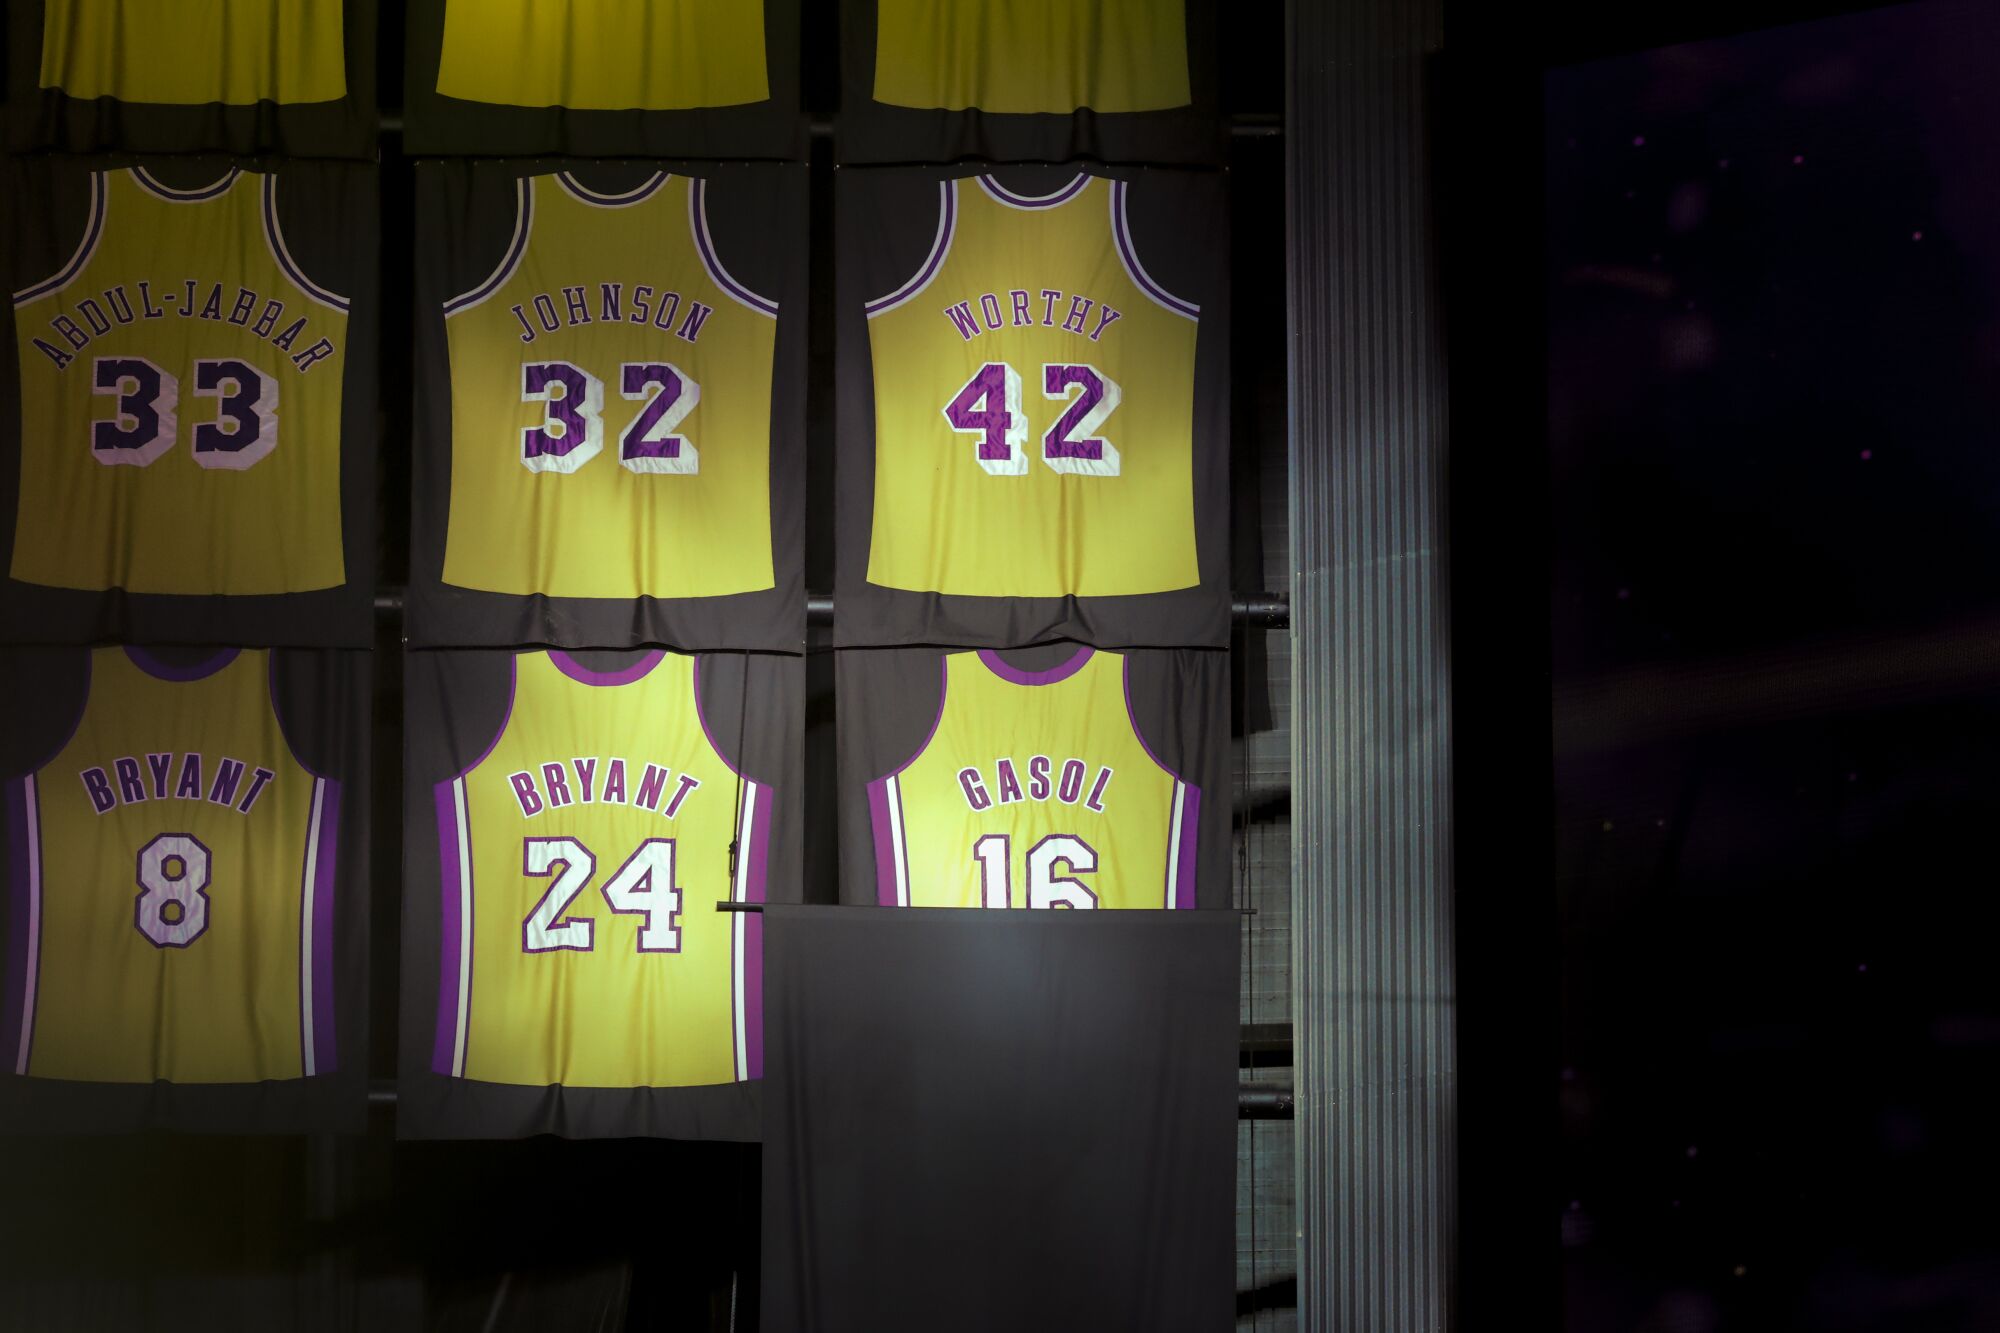 La maglia ritirata dell'ex stella dei Lakers Pau Gasol è stata rivelata durante una cerimonia dell'intervallo martedì.